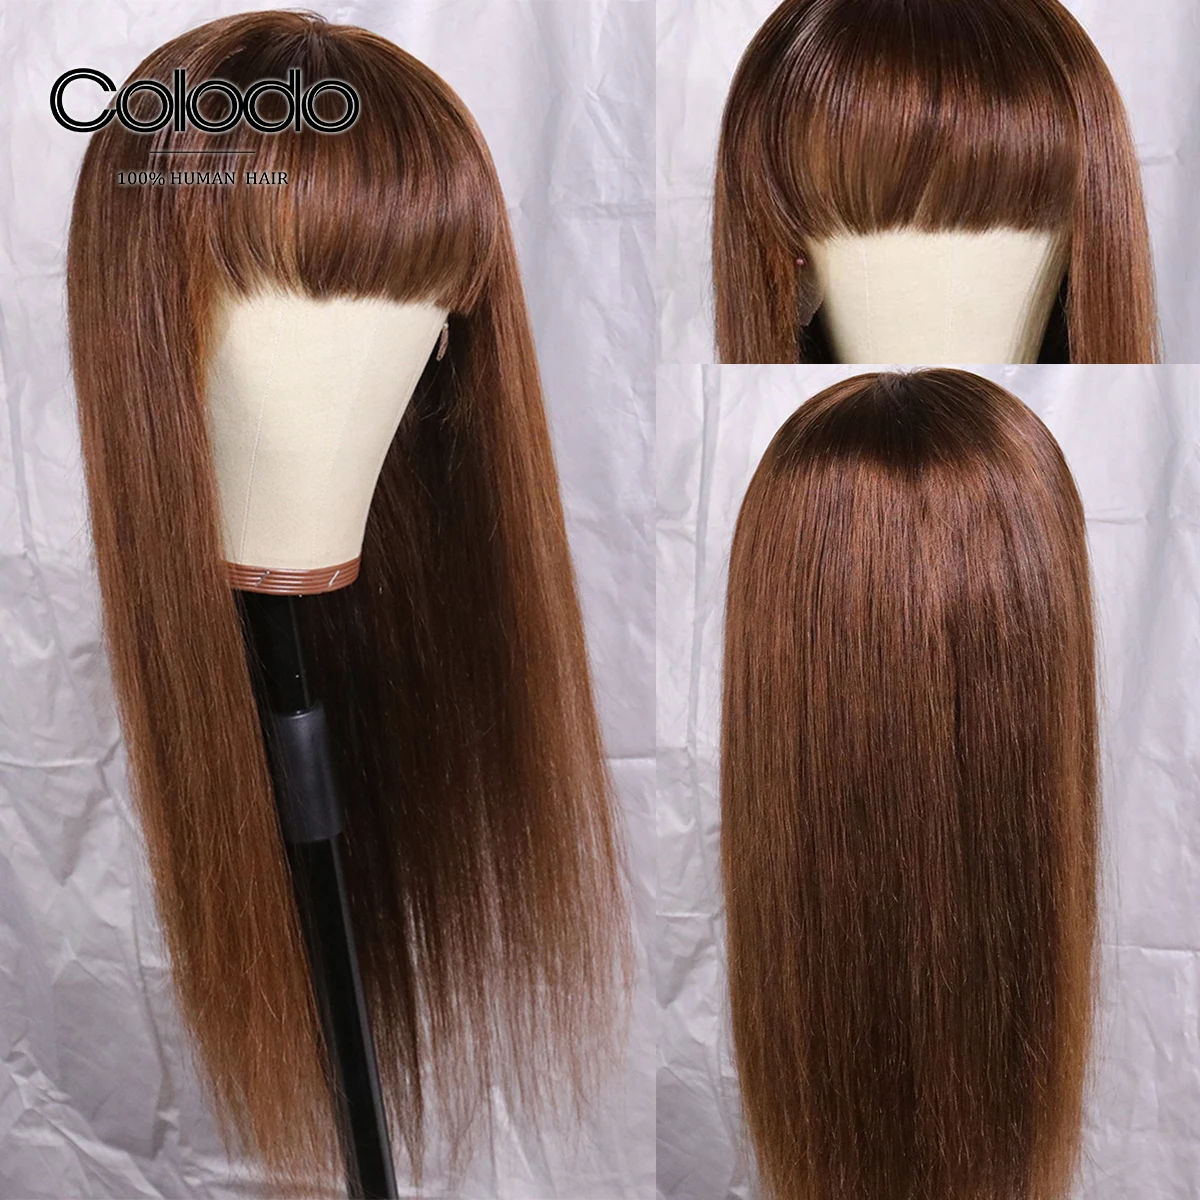 Цвет: коричневый парик из человеческих волос, бразильский парик 99j, прямые парики с челкой, волосы remy, человеческие волосы, парики для черных